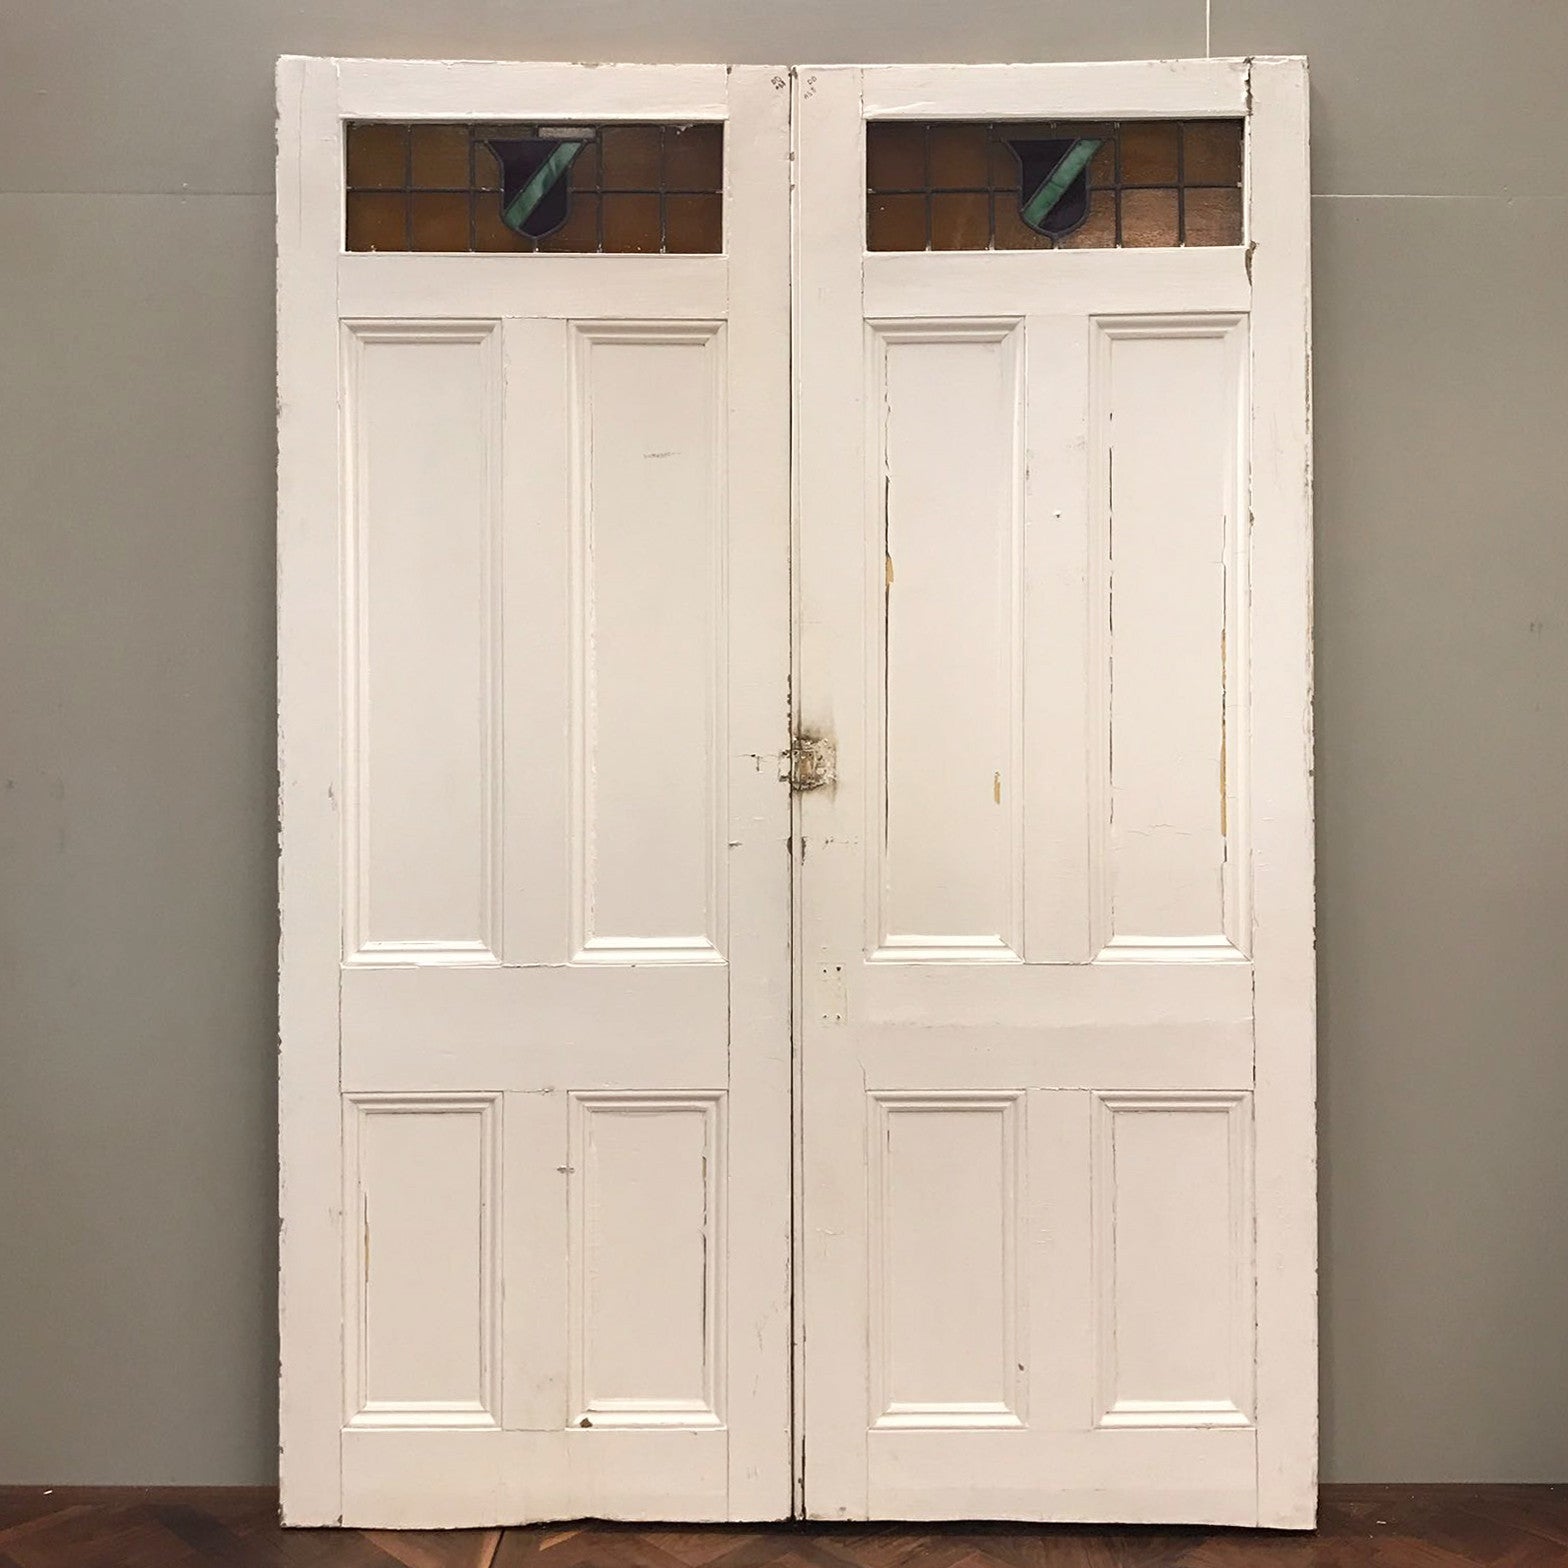 Antique Edwardian Pine Double Doors - 181cm x 265cm | The Architectural Forum